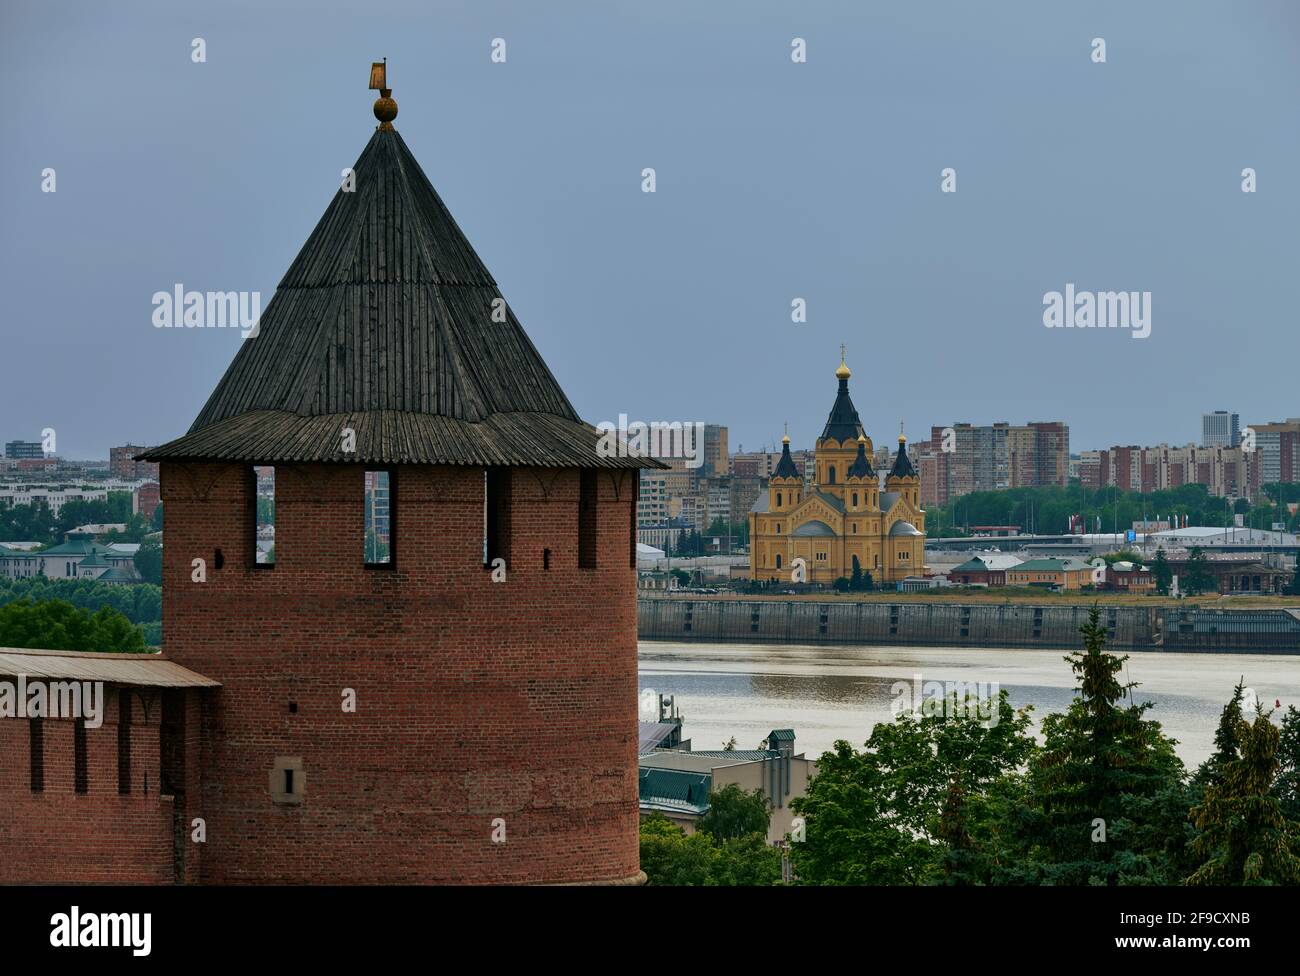 Blick auf den kreml aus Backstein aus dem 16. Jahrhundert, der die Stadtmauern des historischen Zentrums von Nischni Nowgorod bildet und im 20. Jahrhundert renoviert wurde Stockfoto